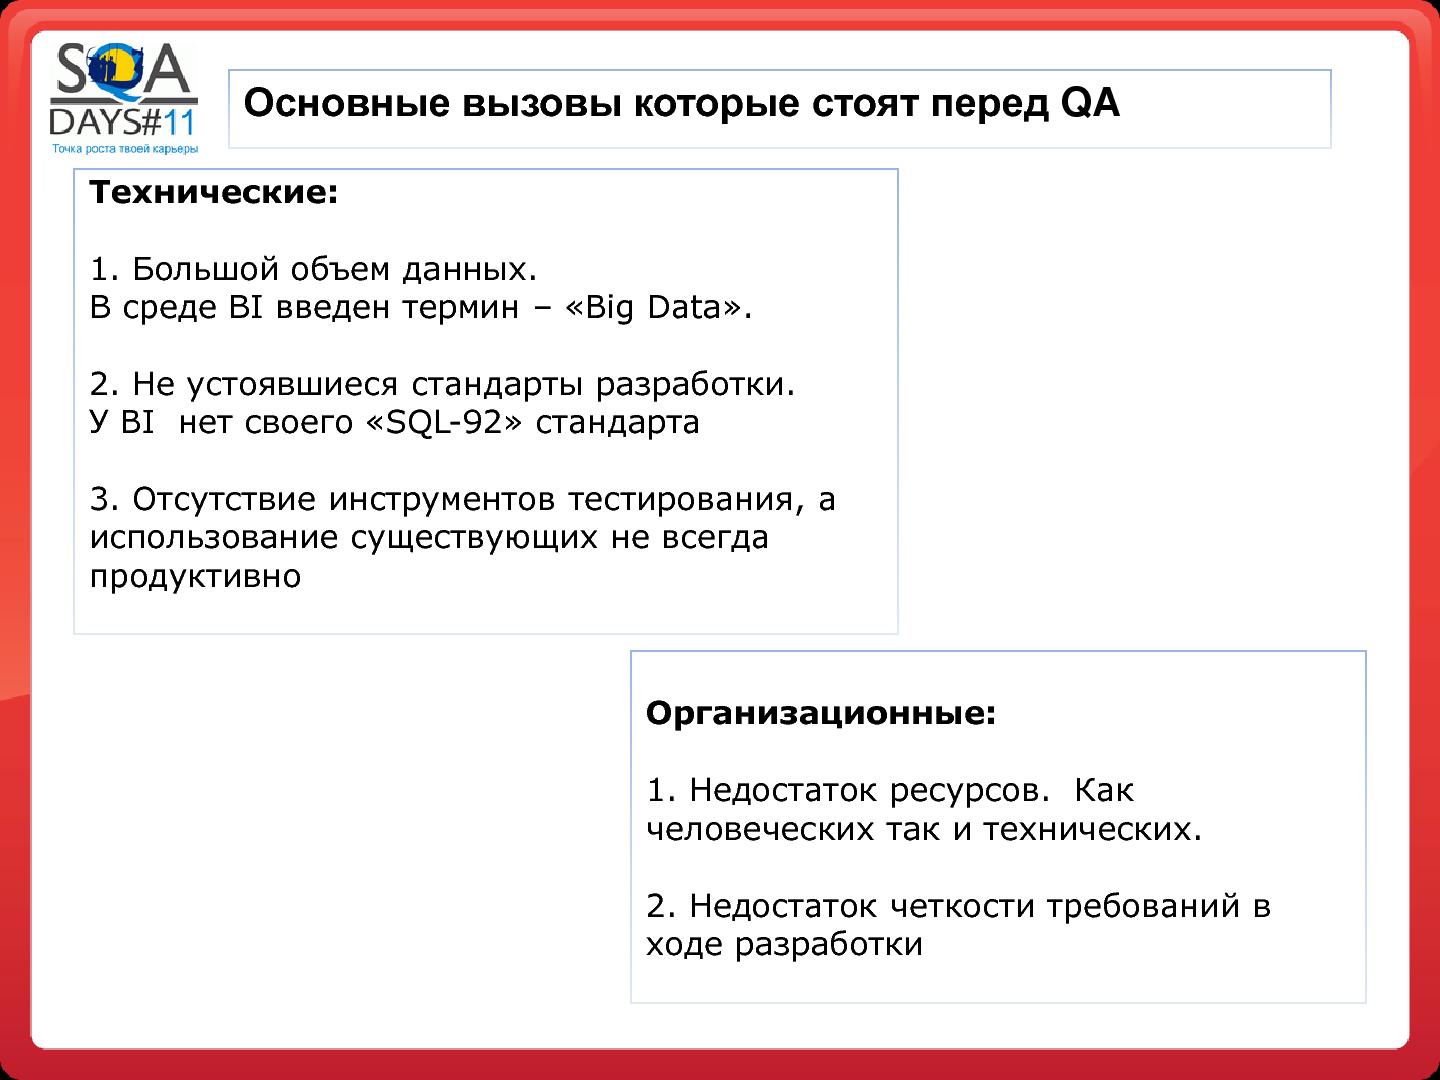 Файл:Тестирование в BI проектах (Дмитрий Романов, SQADays-11).pdf